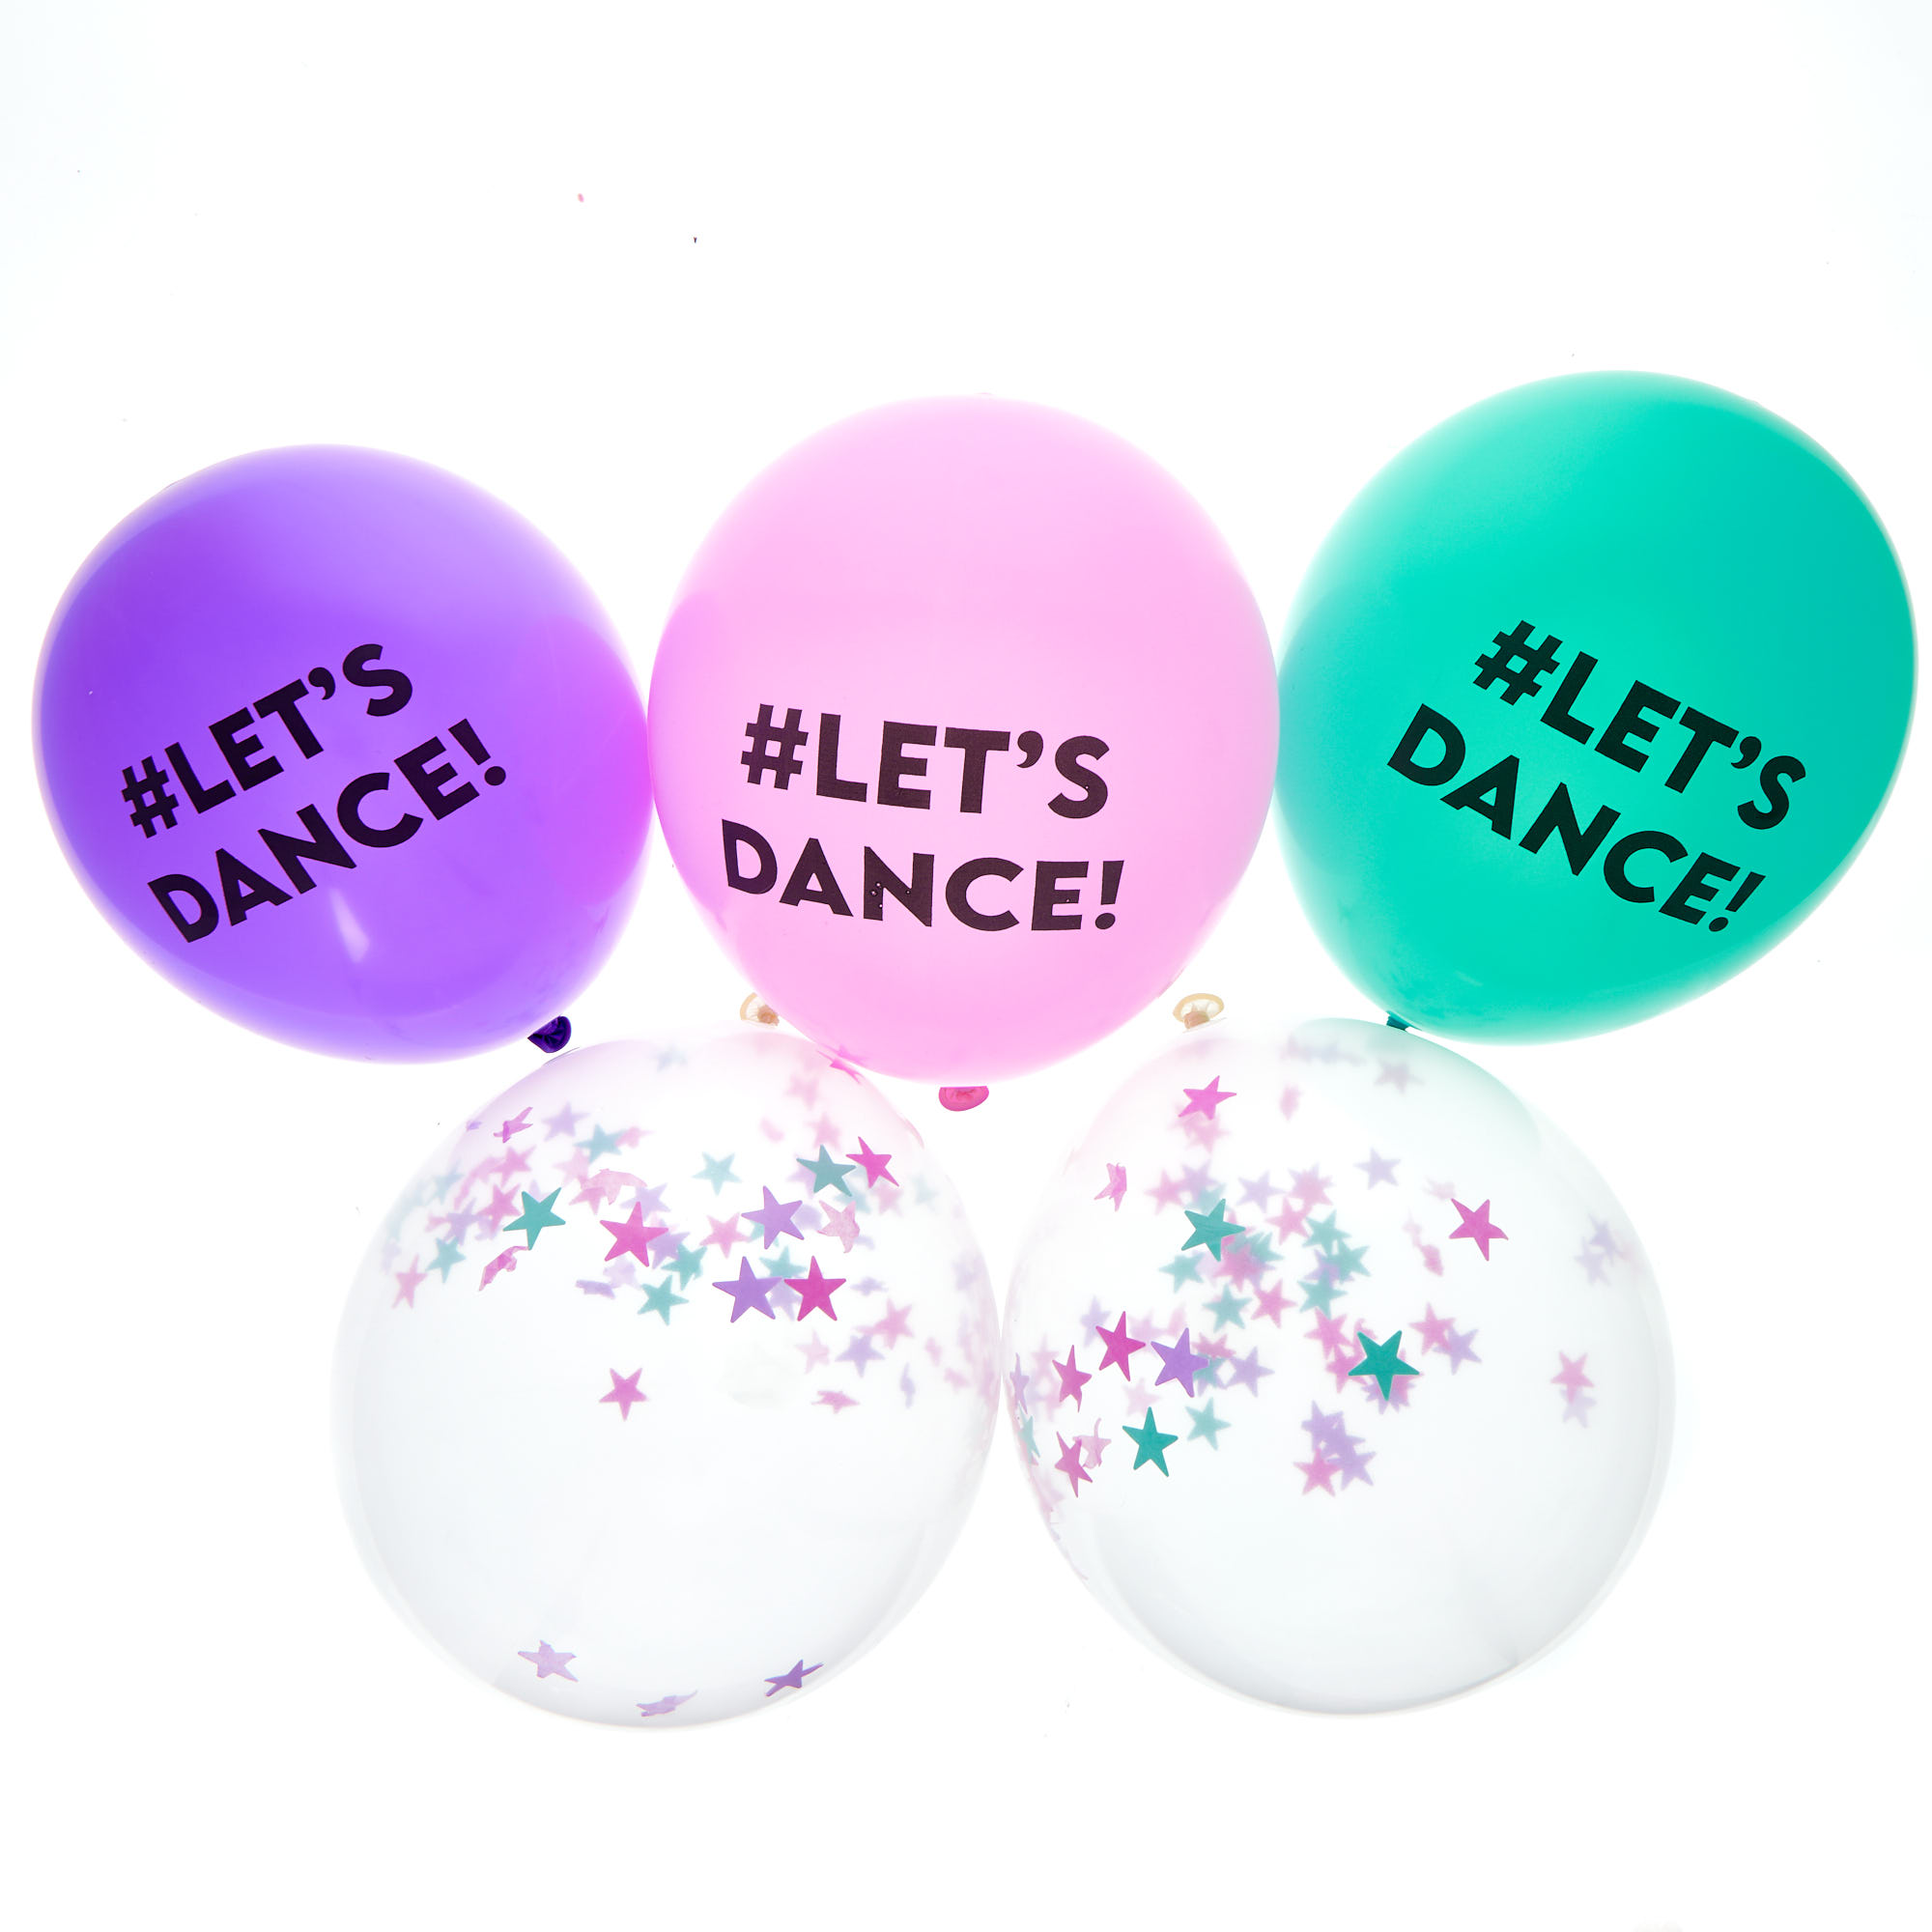 Lets Dance Party Tableware & Decorations Bundle - 8 Guests